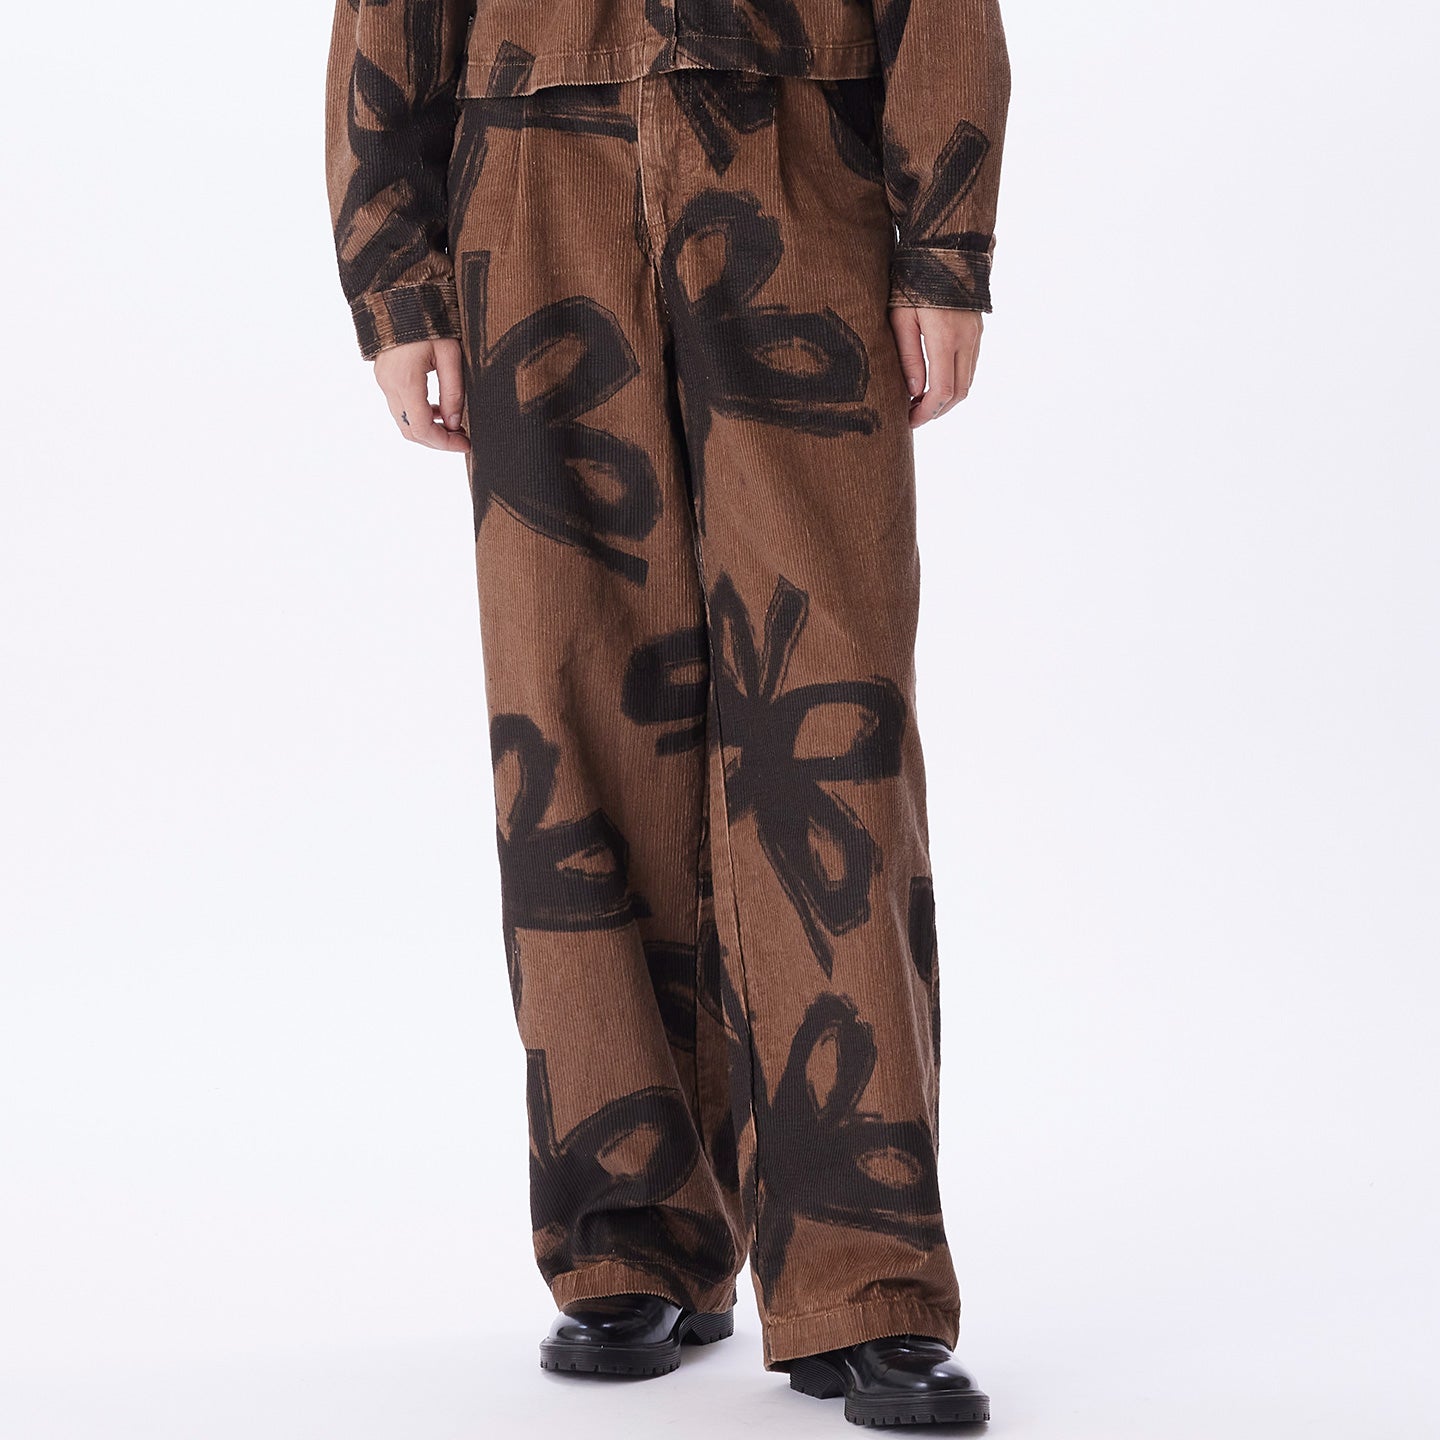 diabolo menthe - version robe salopette - Made in England